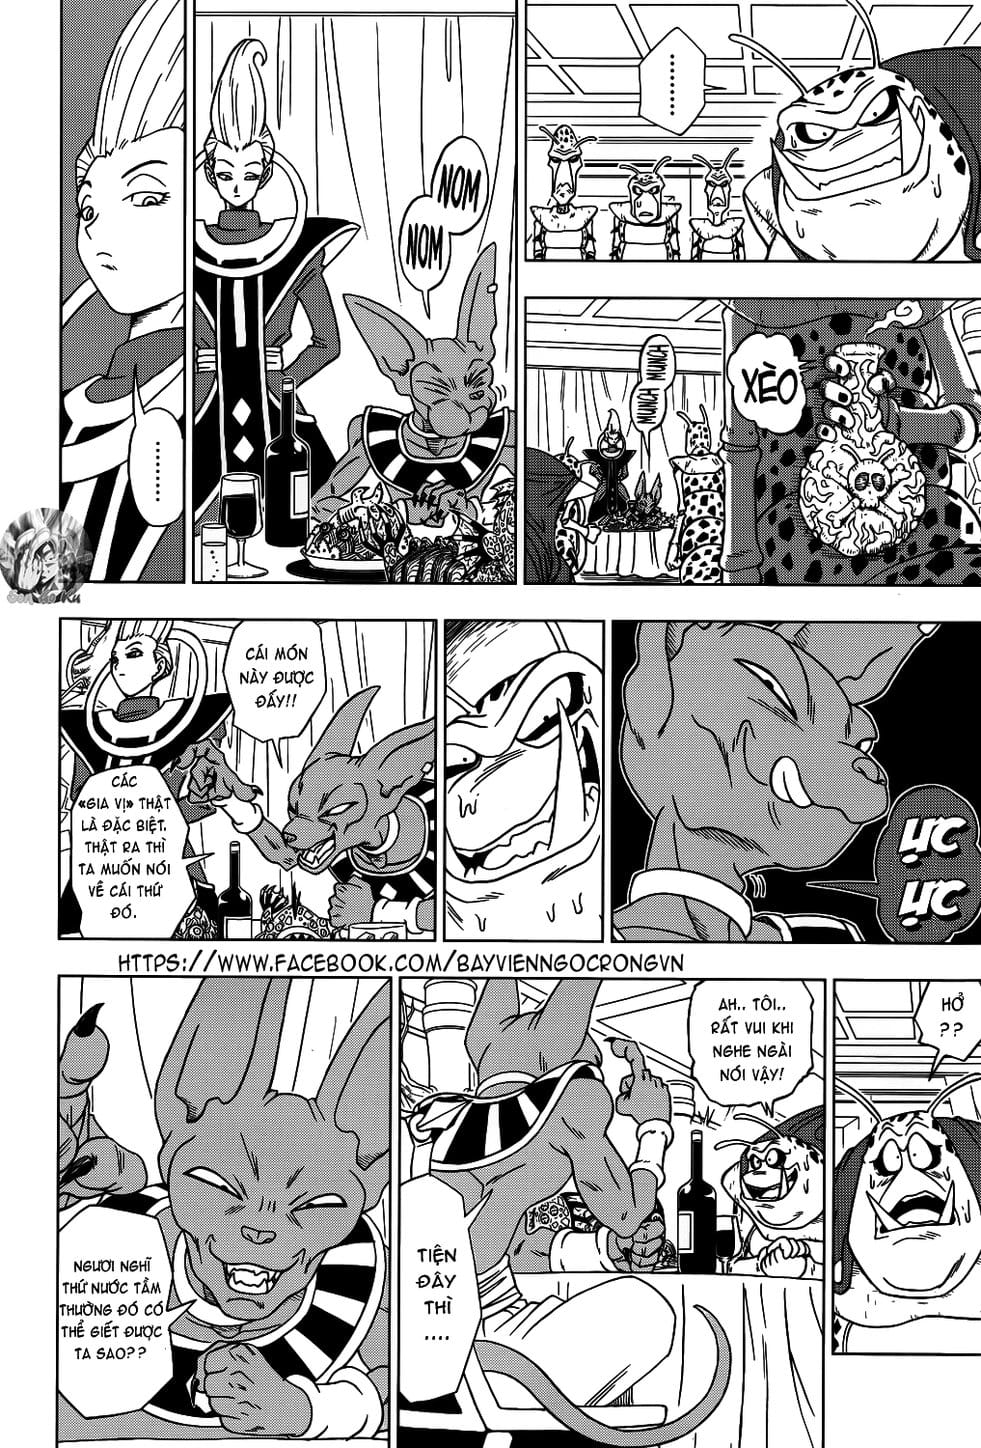 Truyện Tranh Truy Tìm Ngọc Rồng Siêu Cấp - Dragon Ball Super trang 10